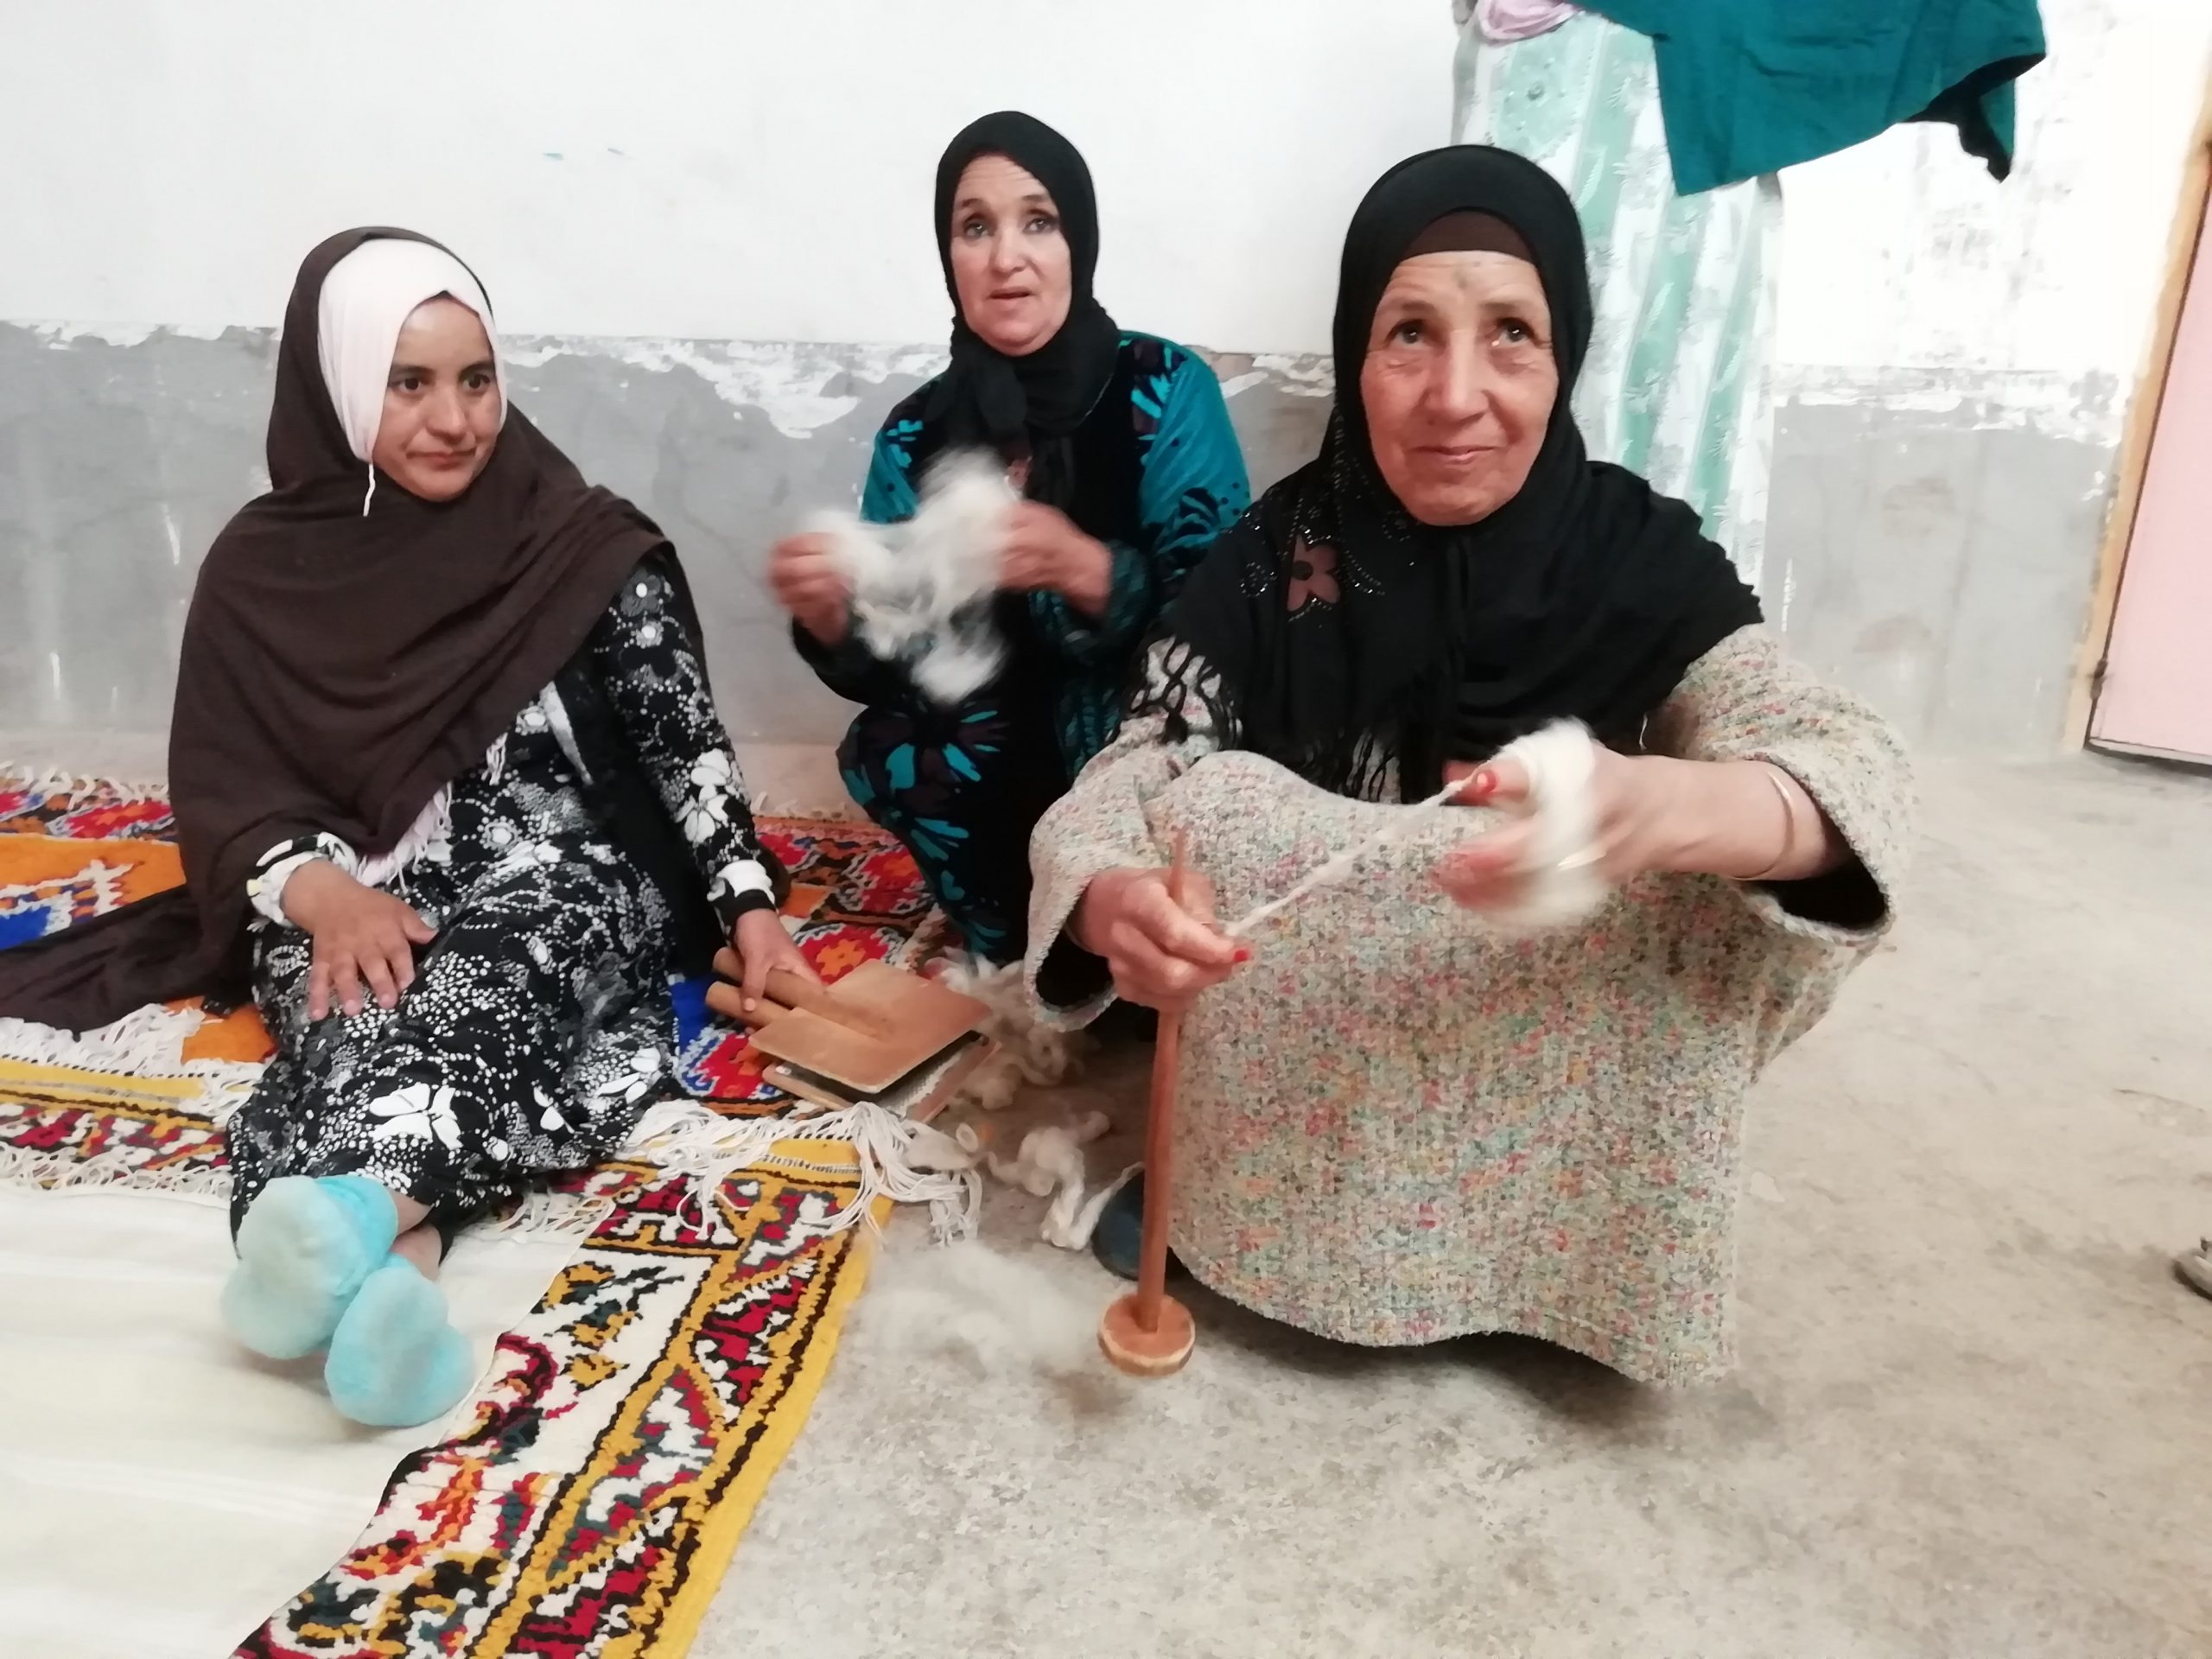 Mujeres marroquíes emprenden su propio negocio en su país gracias a un convenio entre Diputación, Agromartín y Cepaim